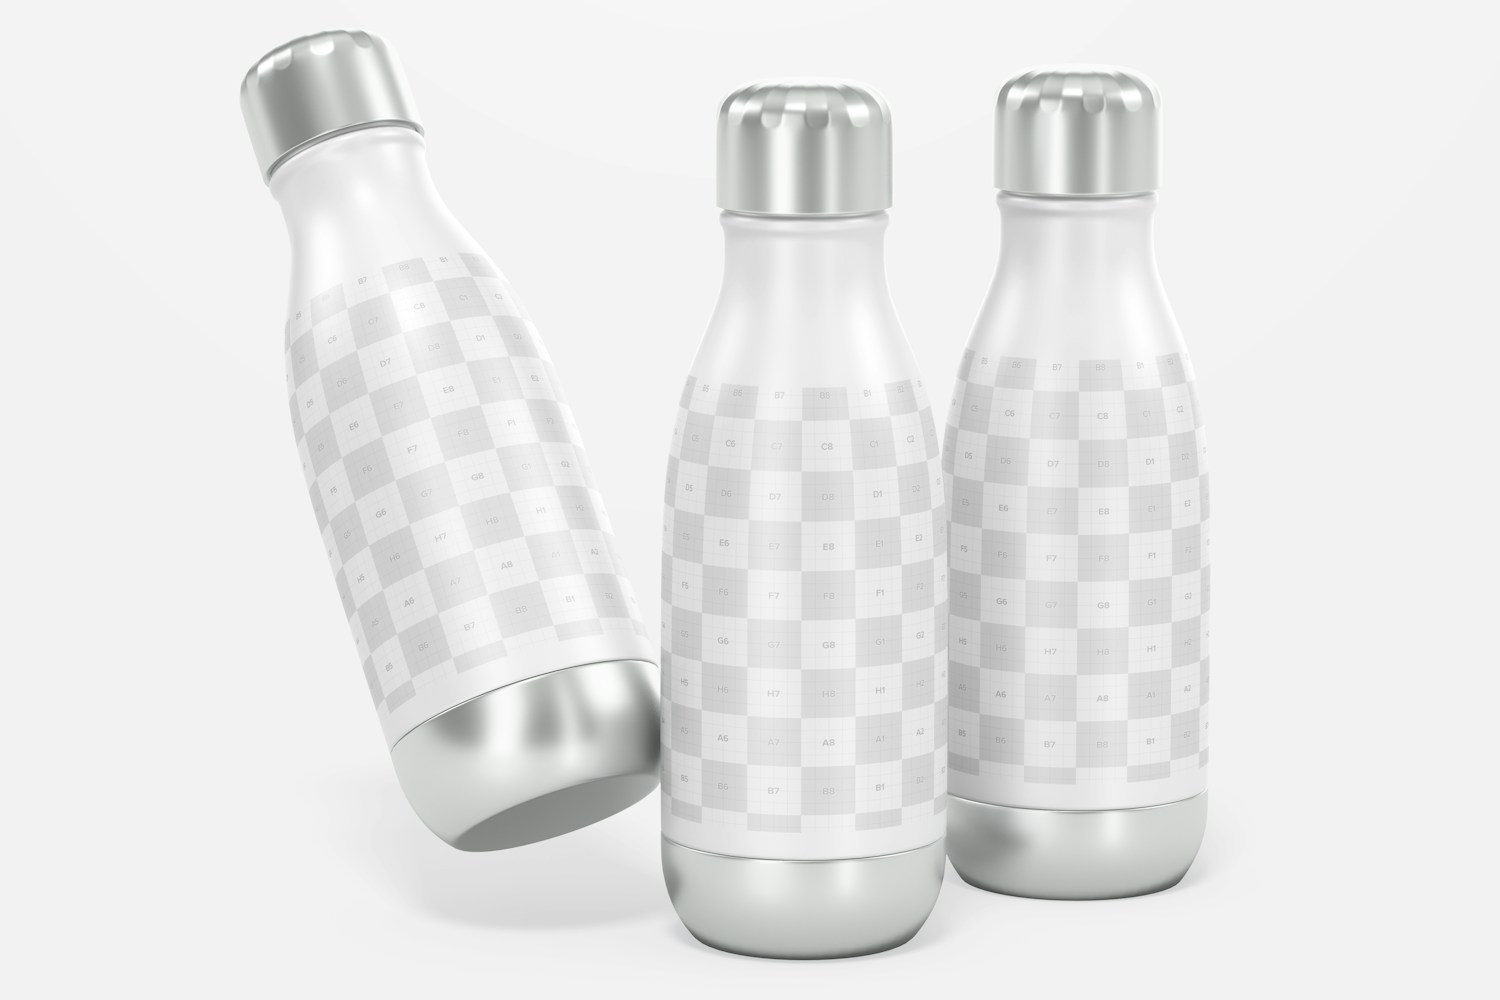 17 oz Metallic Water Bottles Mockup